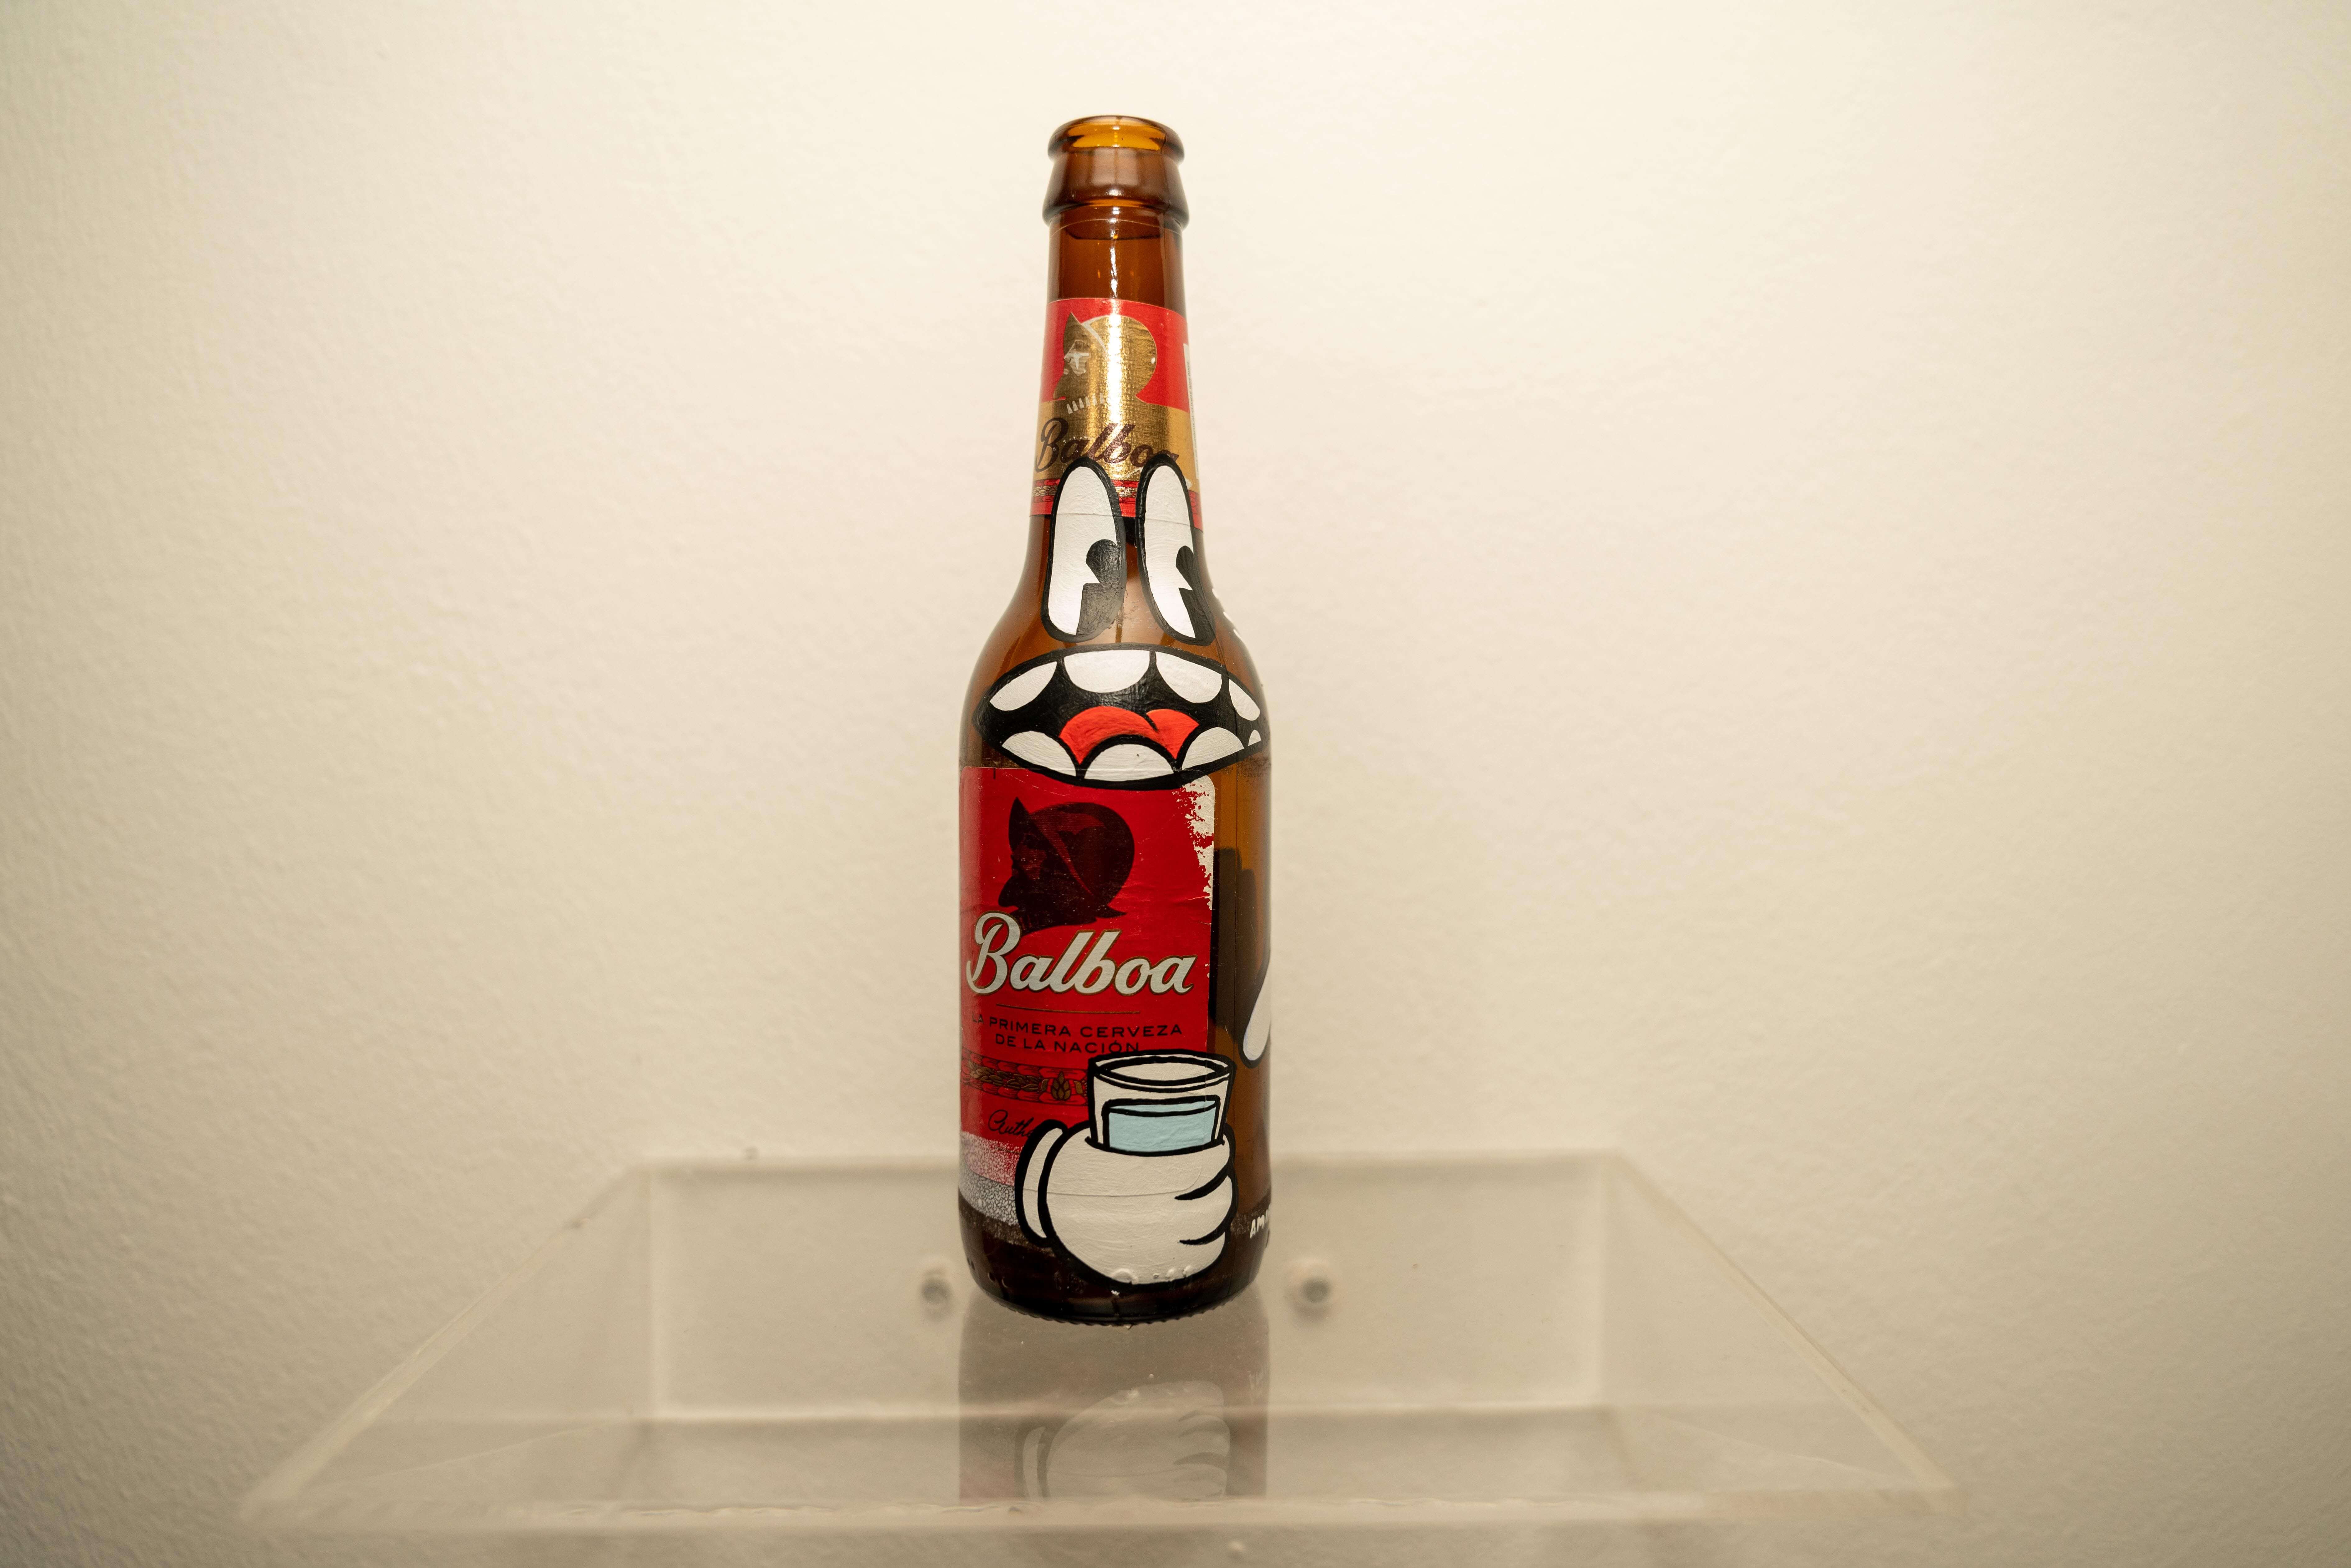 El Arte de Saber Beber cervecería nacional panamá